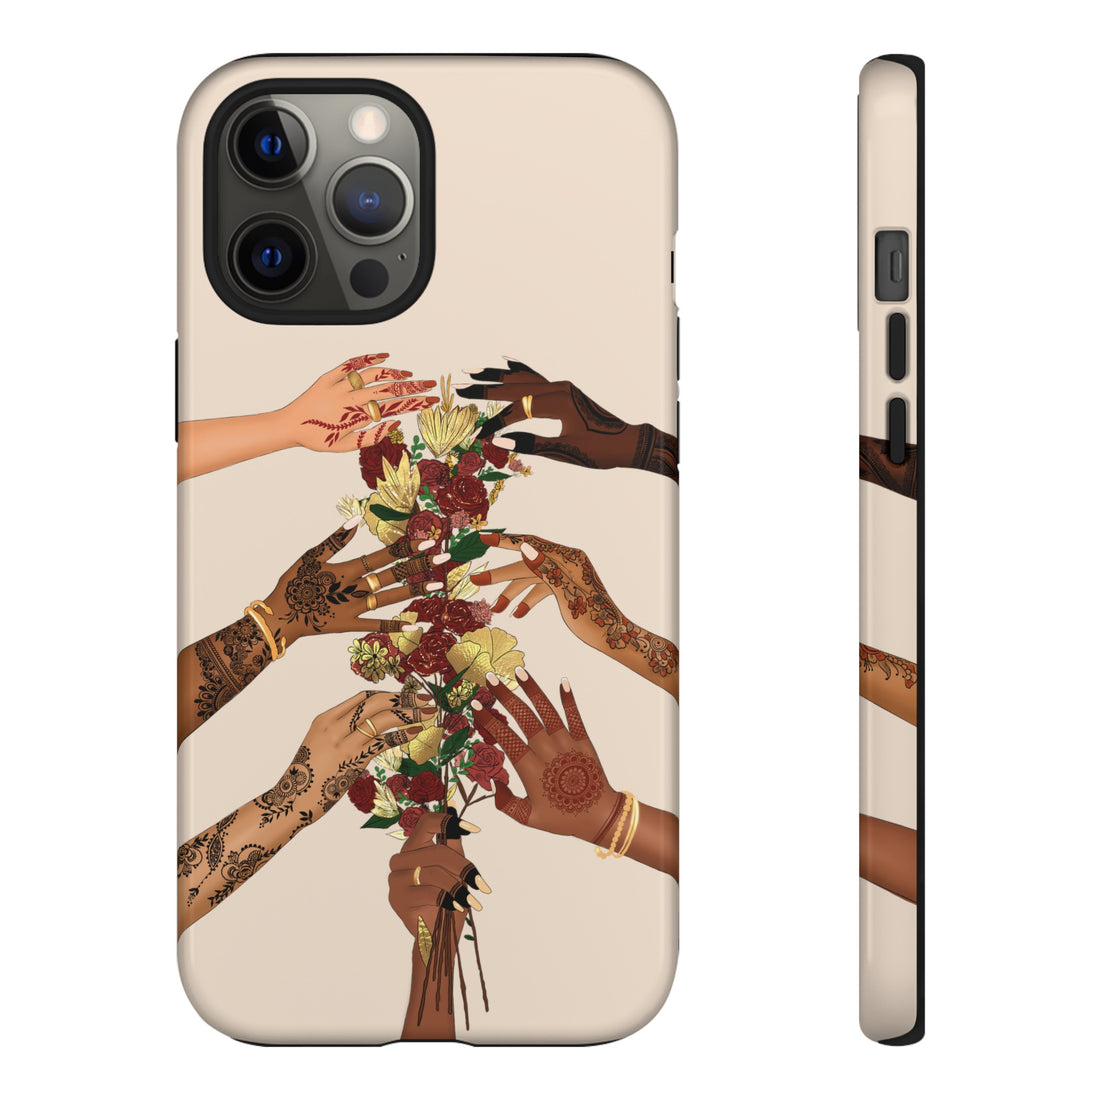 Henna & Flower Hands - Phone Case